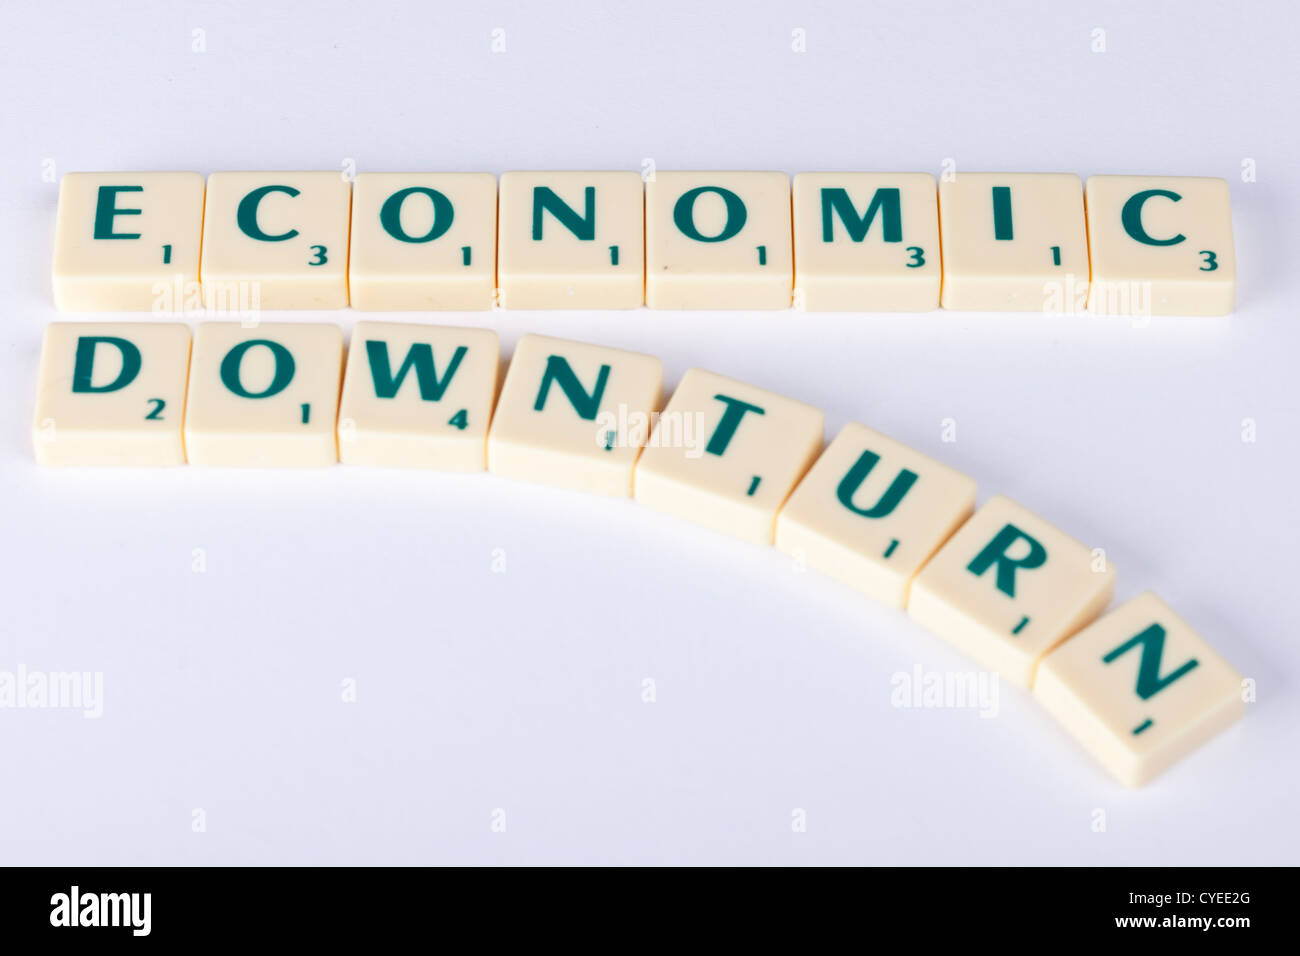 wirtschaftlichen Abschwungs Fliesen Wirtschaft den Bach runter, Konzept-Darstellung mit Scrabble-Buchstaben. Stockfoto